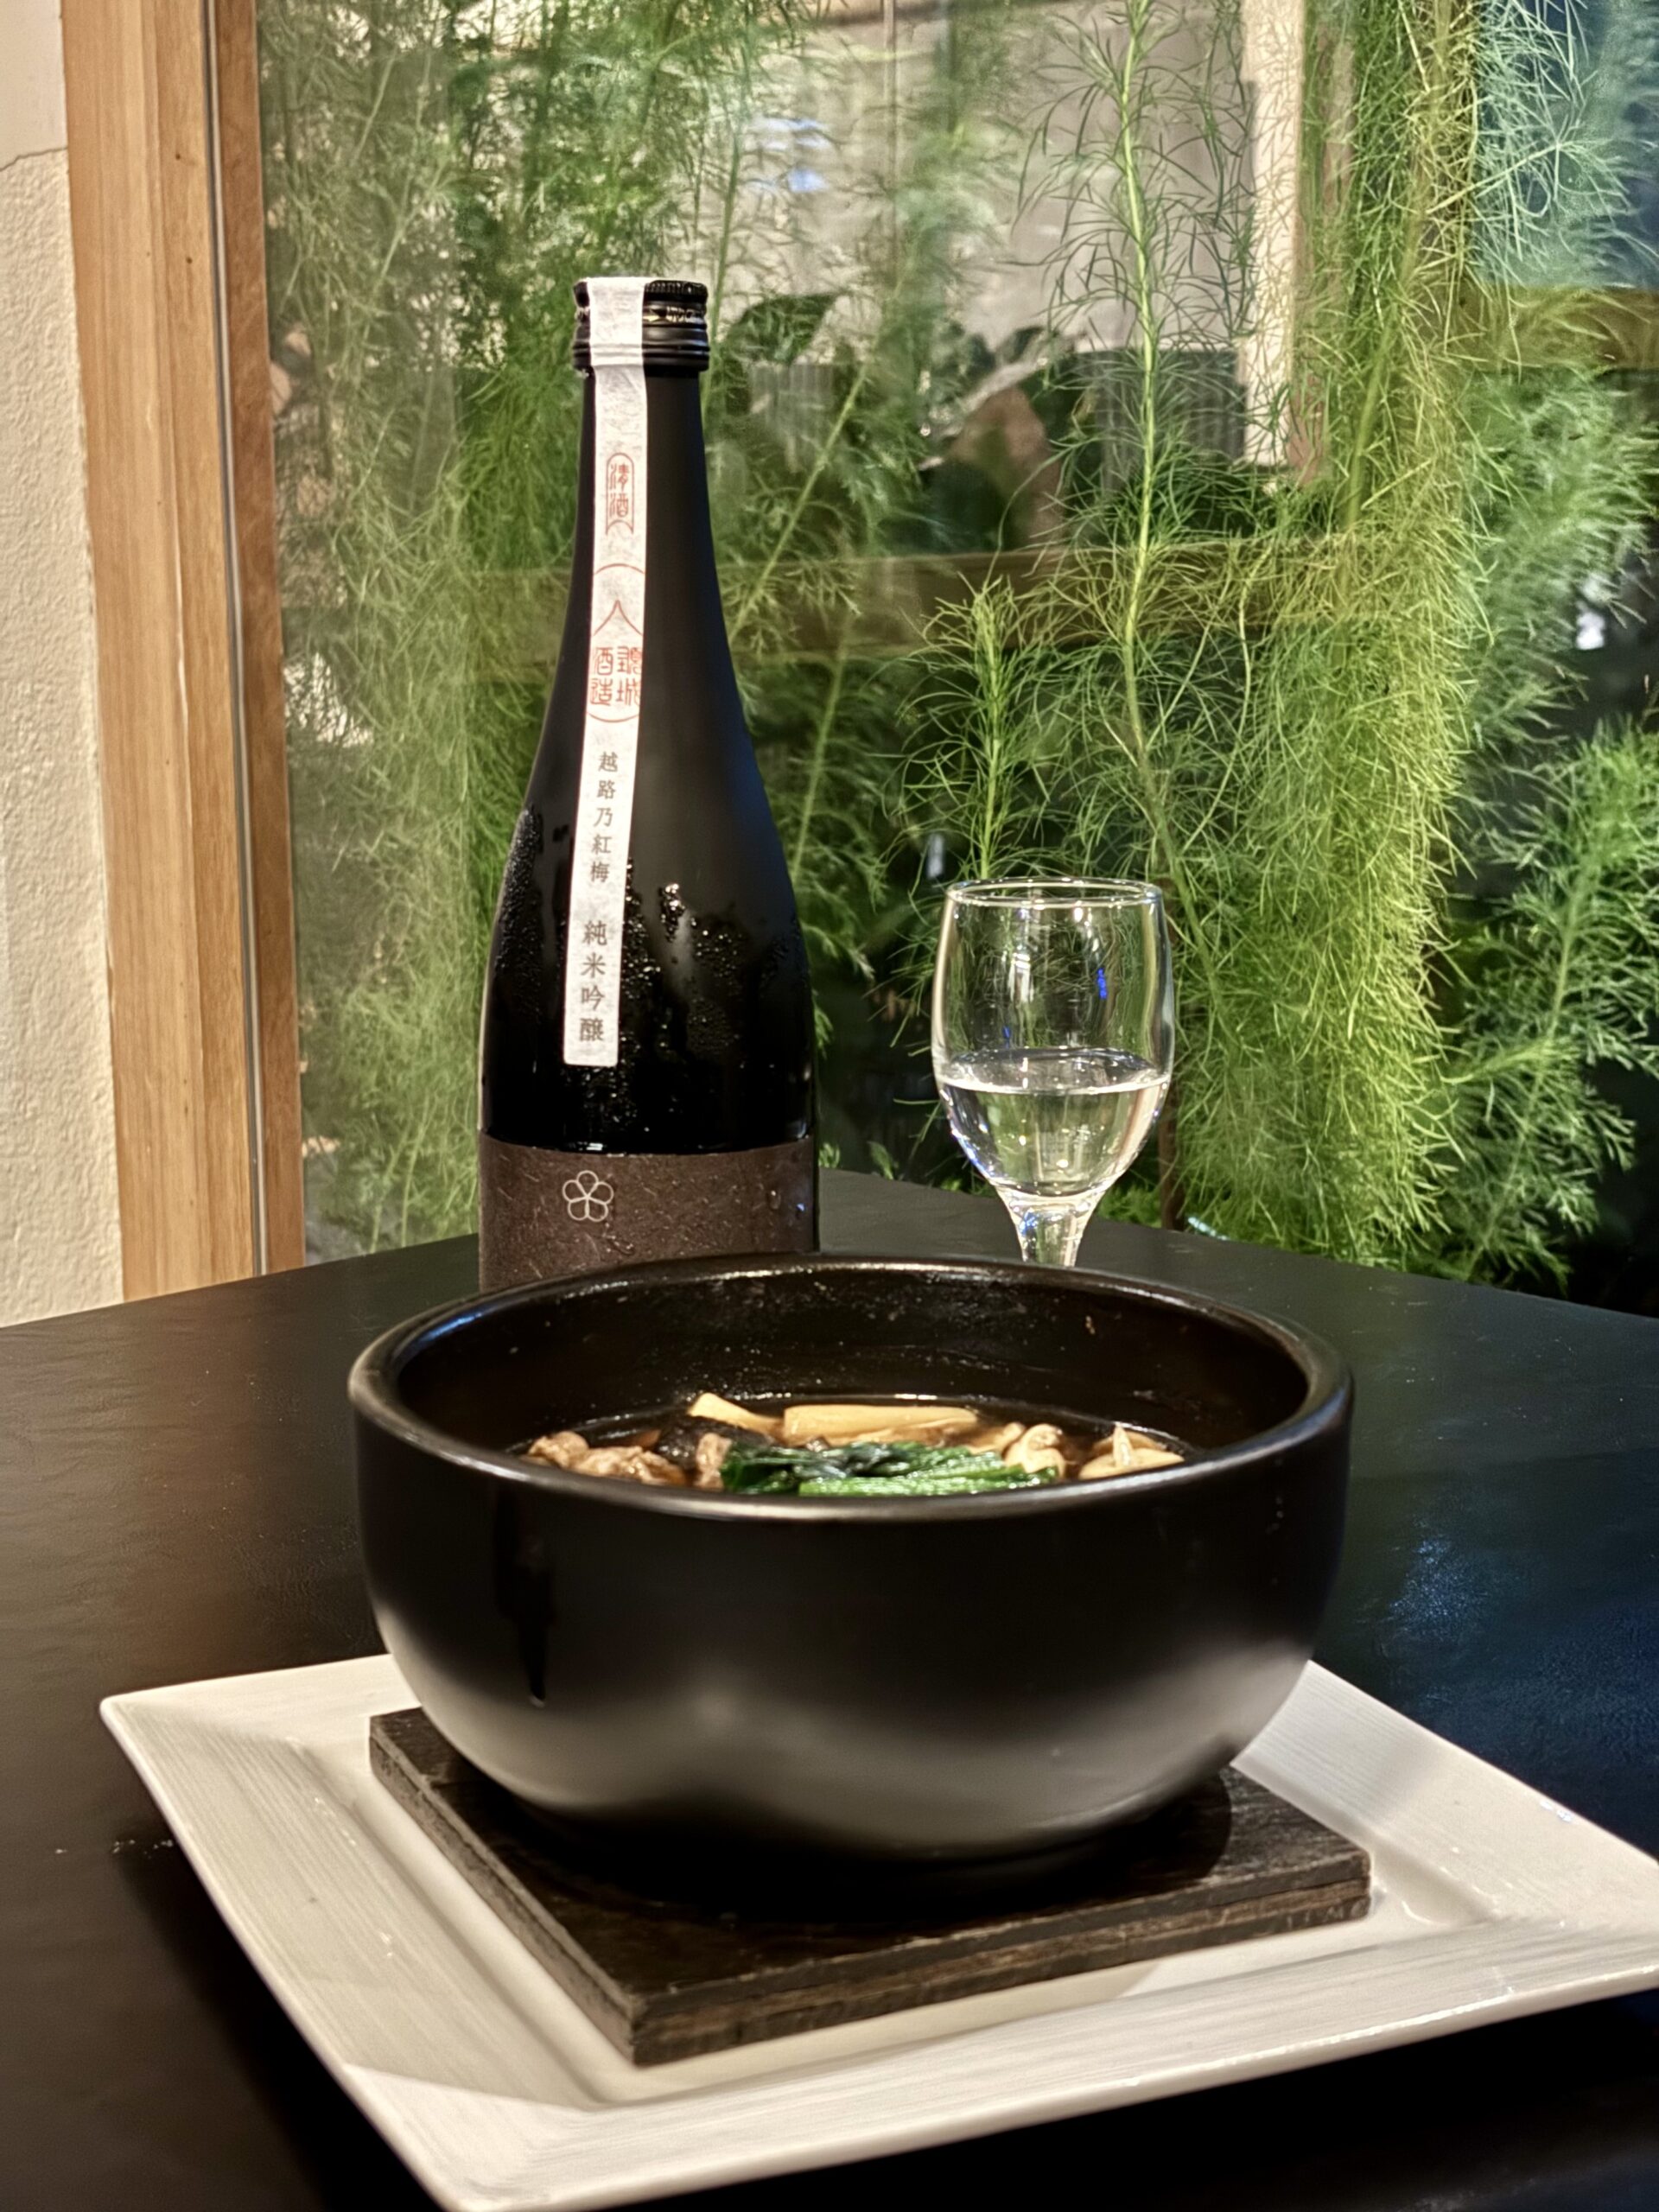 颈城酒造出品的“越路乃红梅”纯米吟酿与乌龙面配餐。（摄影：叶蓬玲）